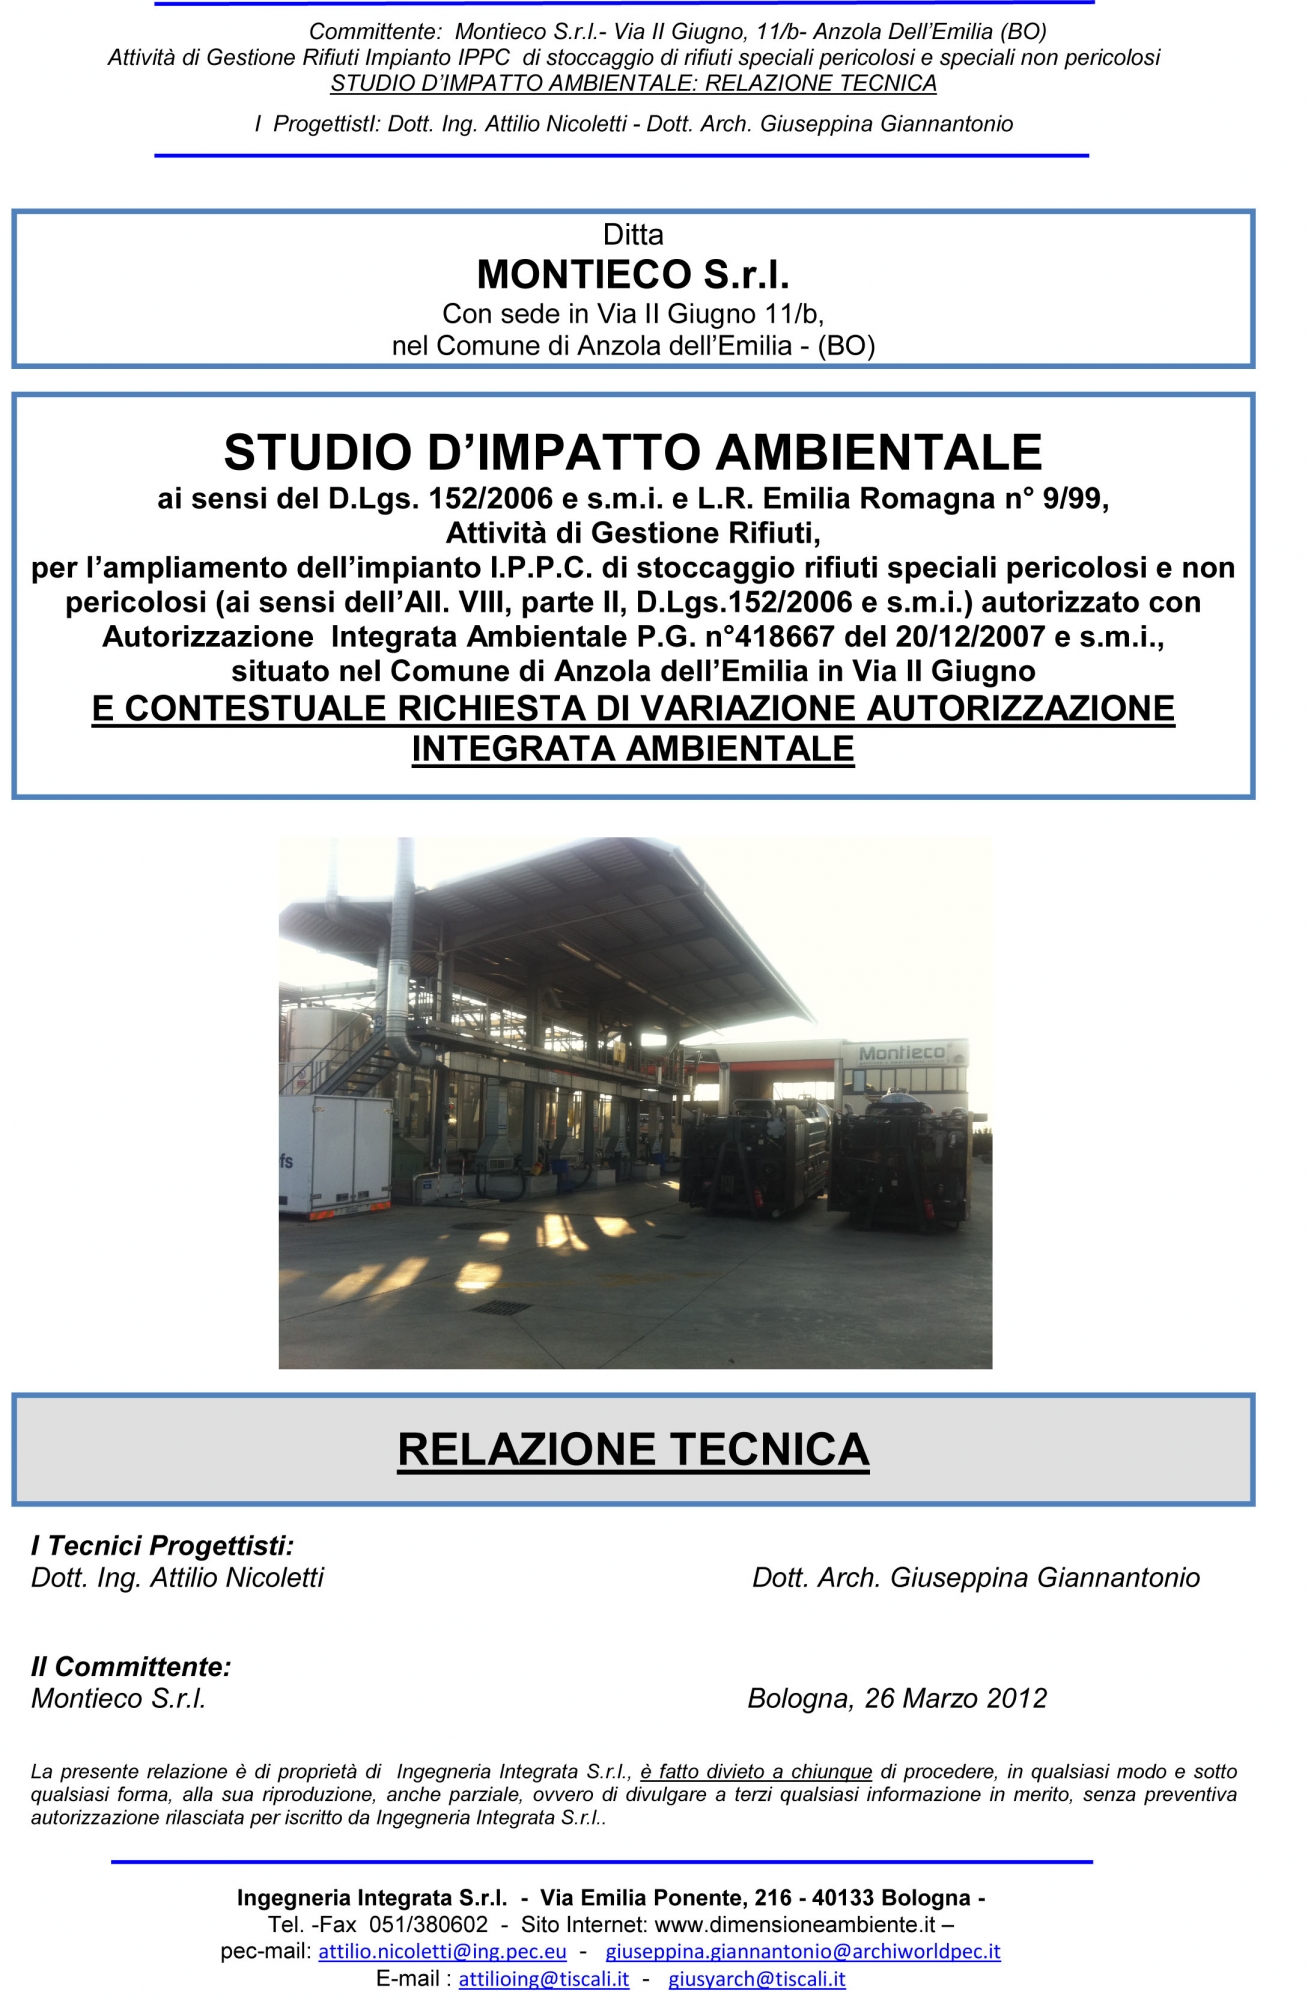 Ing. Attilio Nicoletti, Ingegnere Attilio Nicoletti, Dimensione ambiente Bologna, dimensioneambiente.it